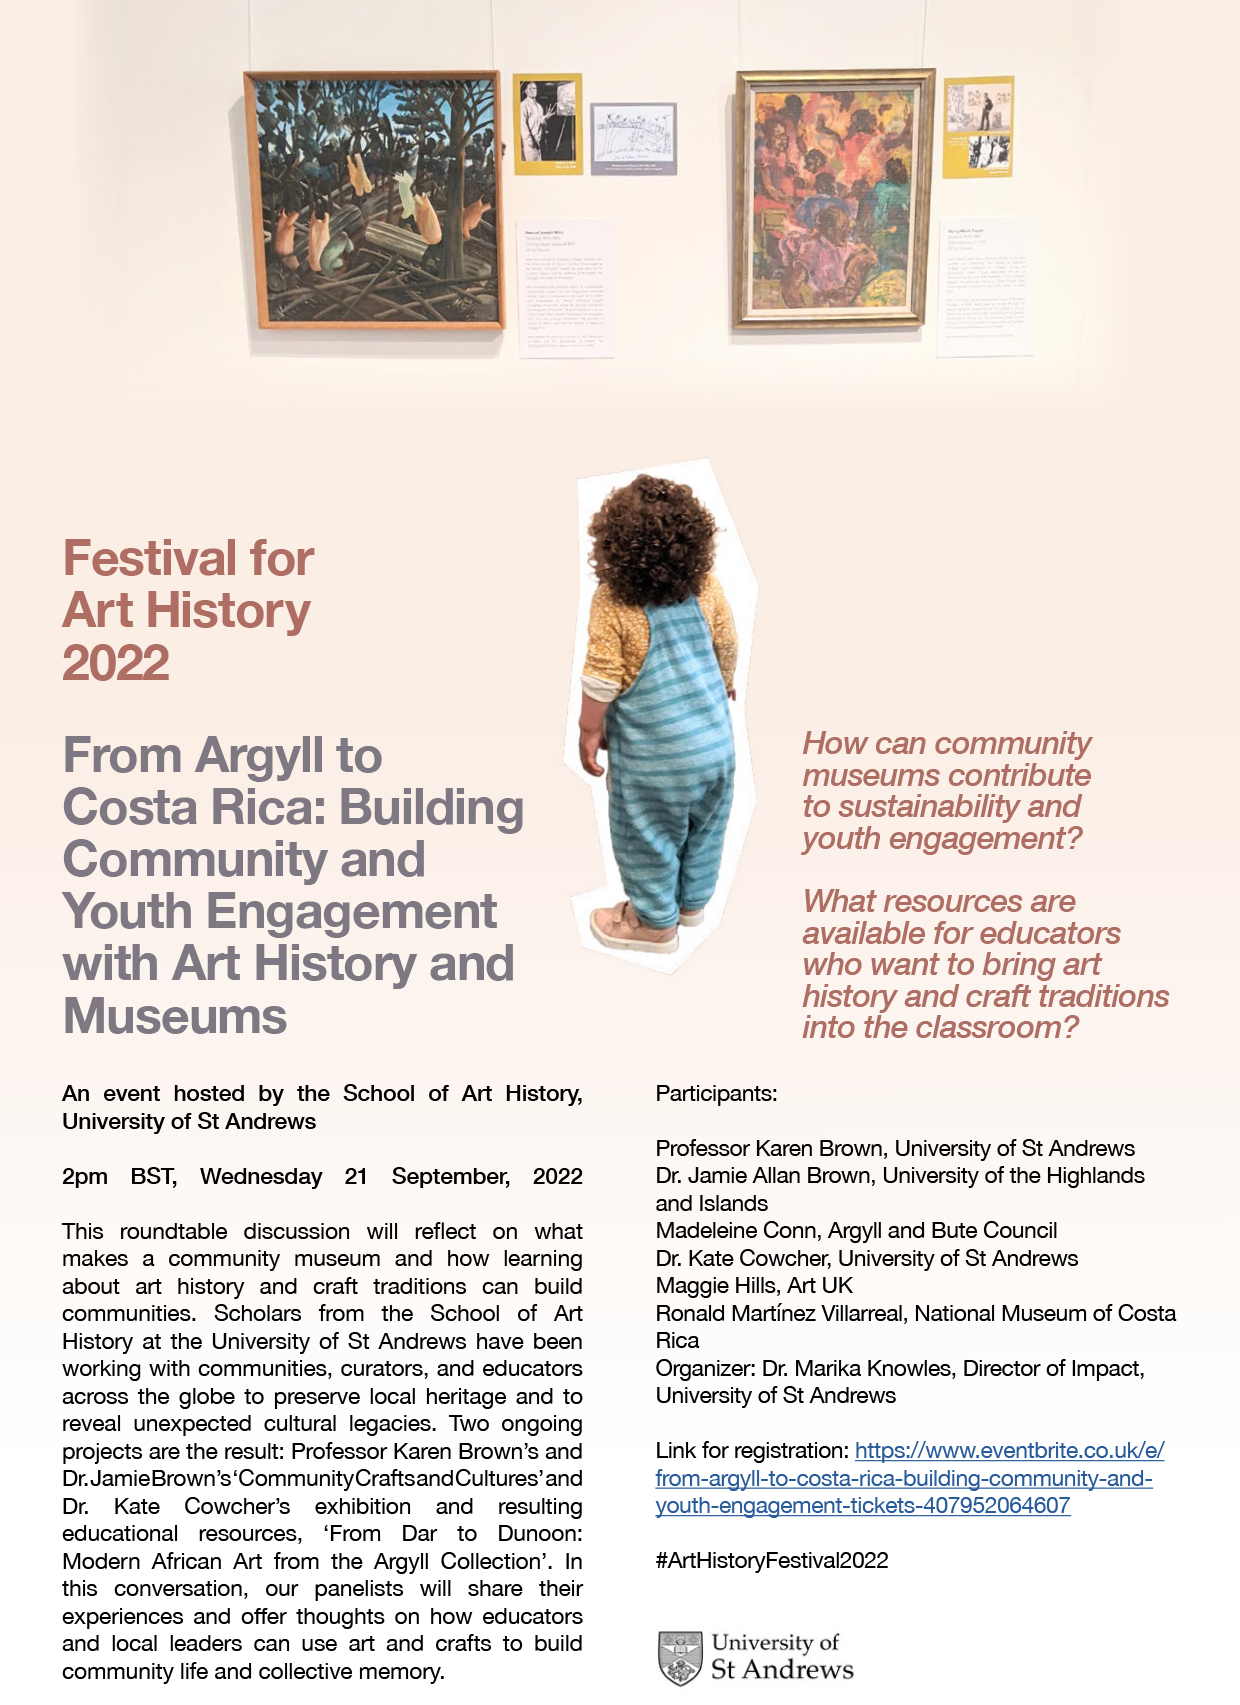 Festival for Art History poster